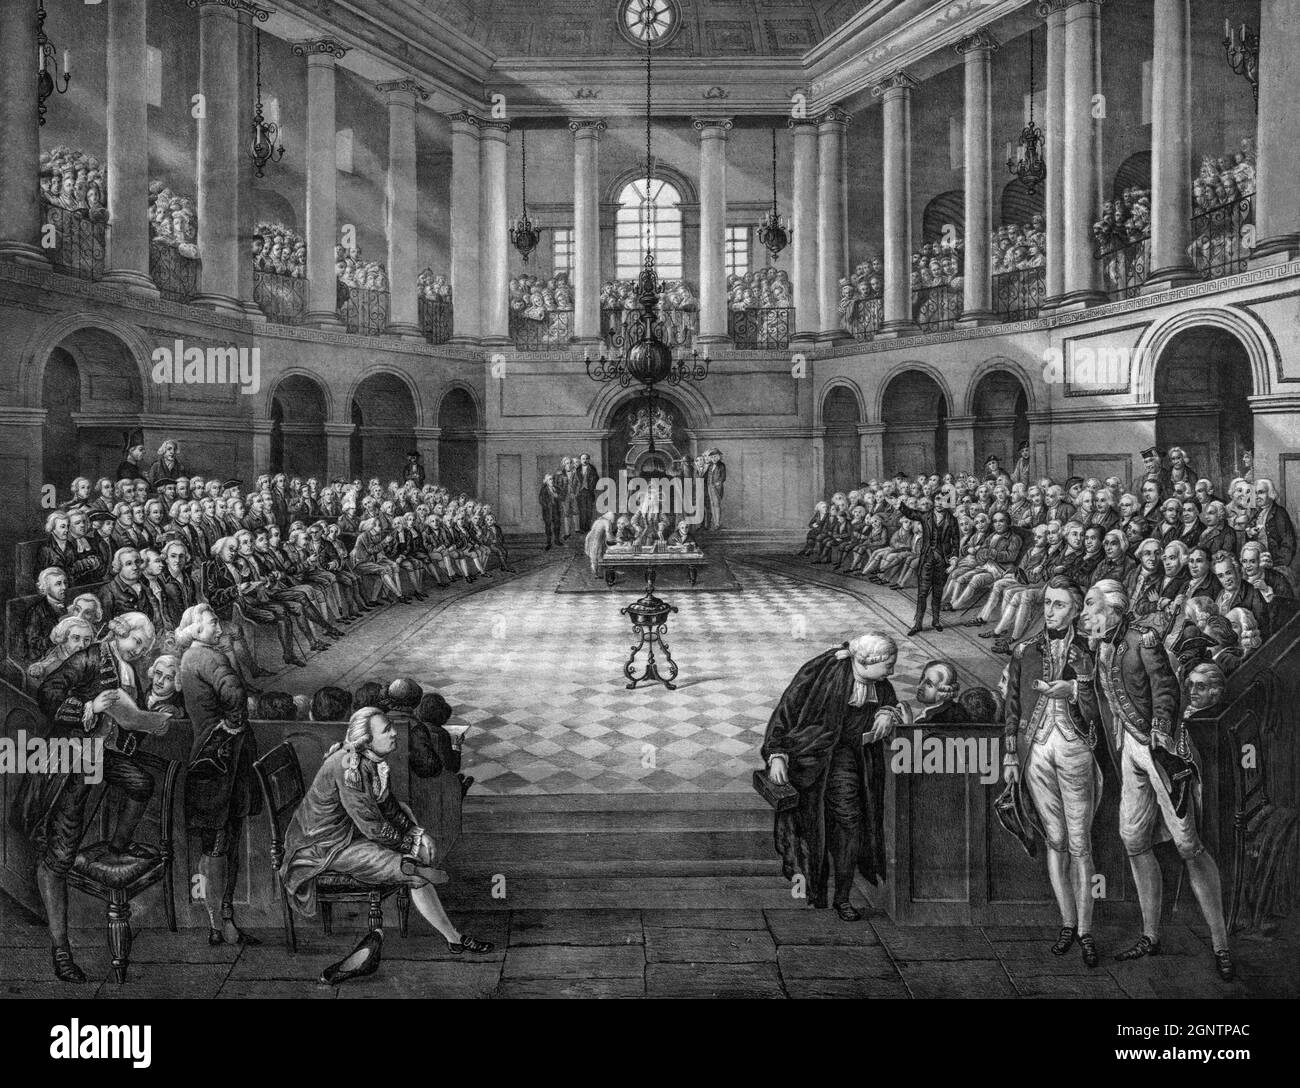 La reunión final en College Green, Dublín, de la Cámara de los Comunes irlandesa, la cámara baja del Parlamento de Irlanda que existía desde 1297 hasta 1790. La membresía de la Cámara de los Comunes fue elegida directamente, pero en una franquicia altamente restrictiva, similar a la Cámara de los Comunes sin reformar en la Inglaterra contemporánea y Gran Bretaña. A partir de 1691, los católicos fueron descalificados de sentarse en el parlamento irlandés, a pesar de que constituían la gran mayoría de la población irlandesa. Foto de stock